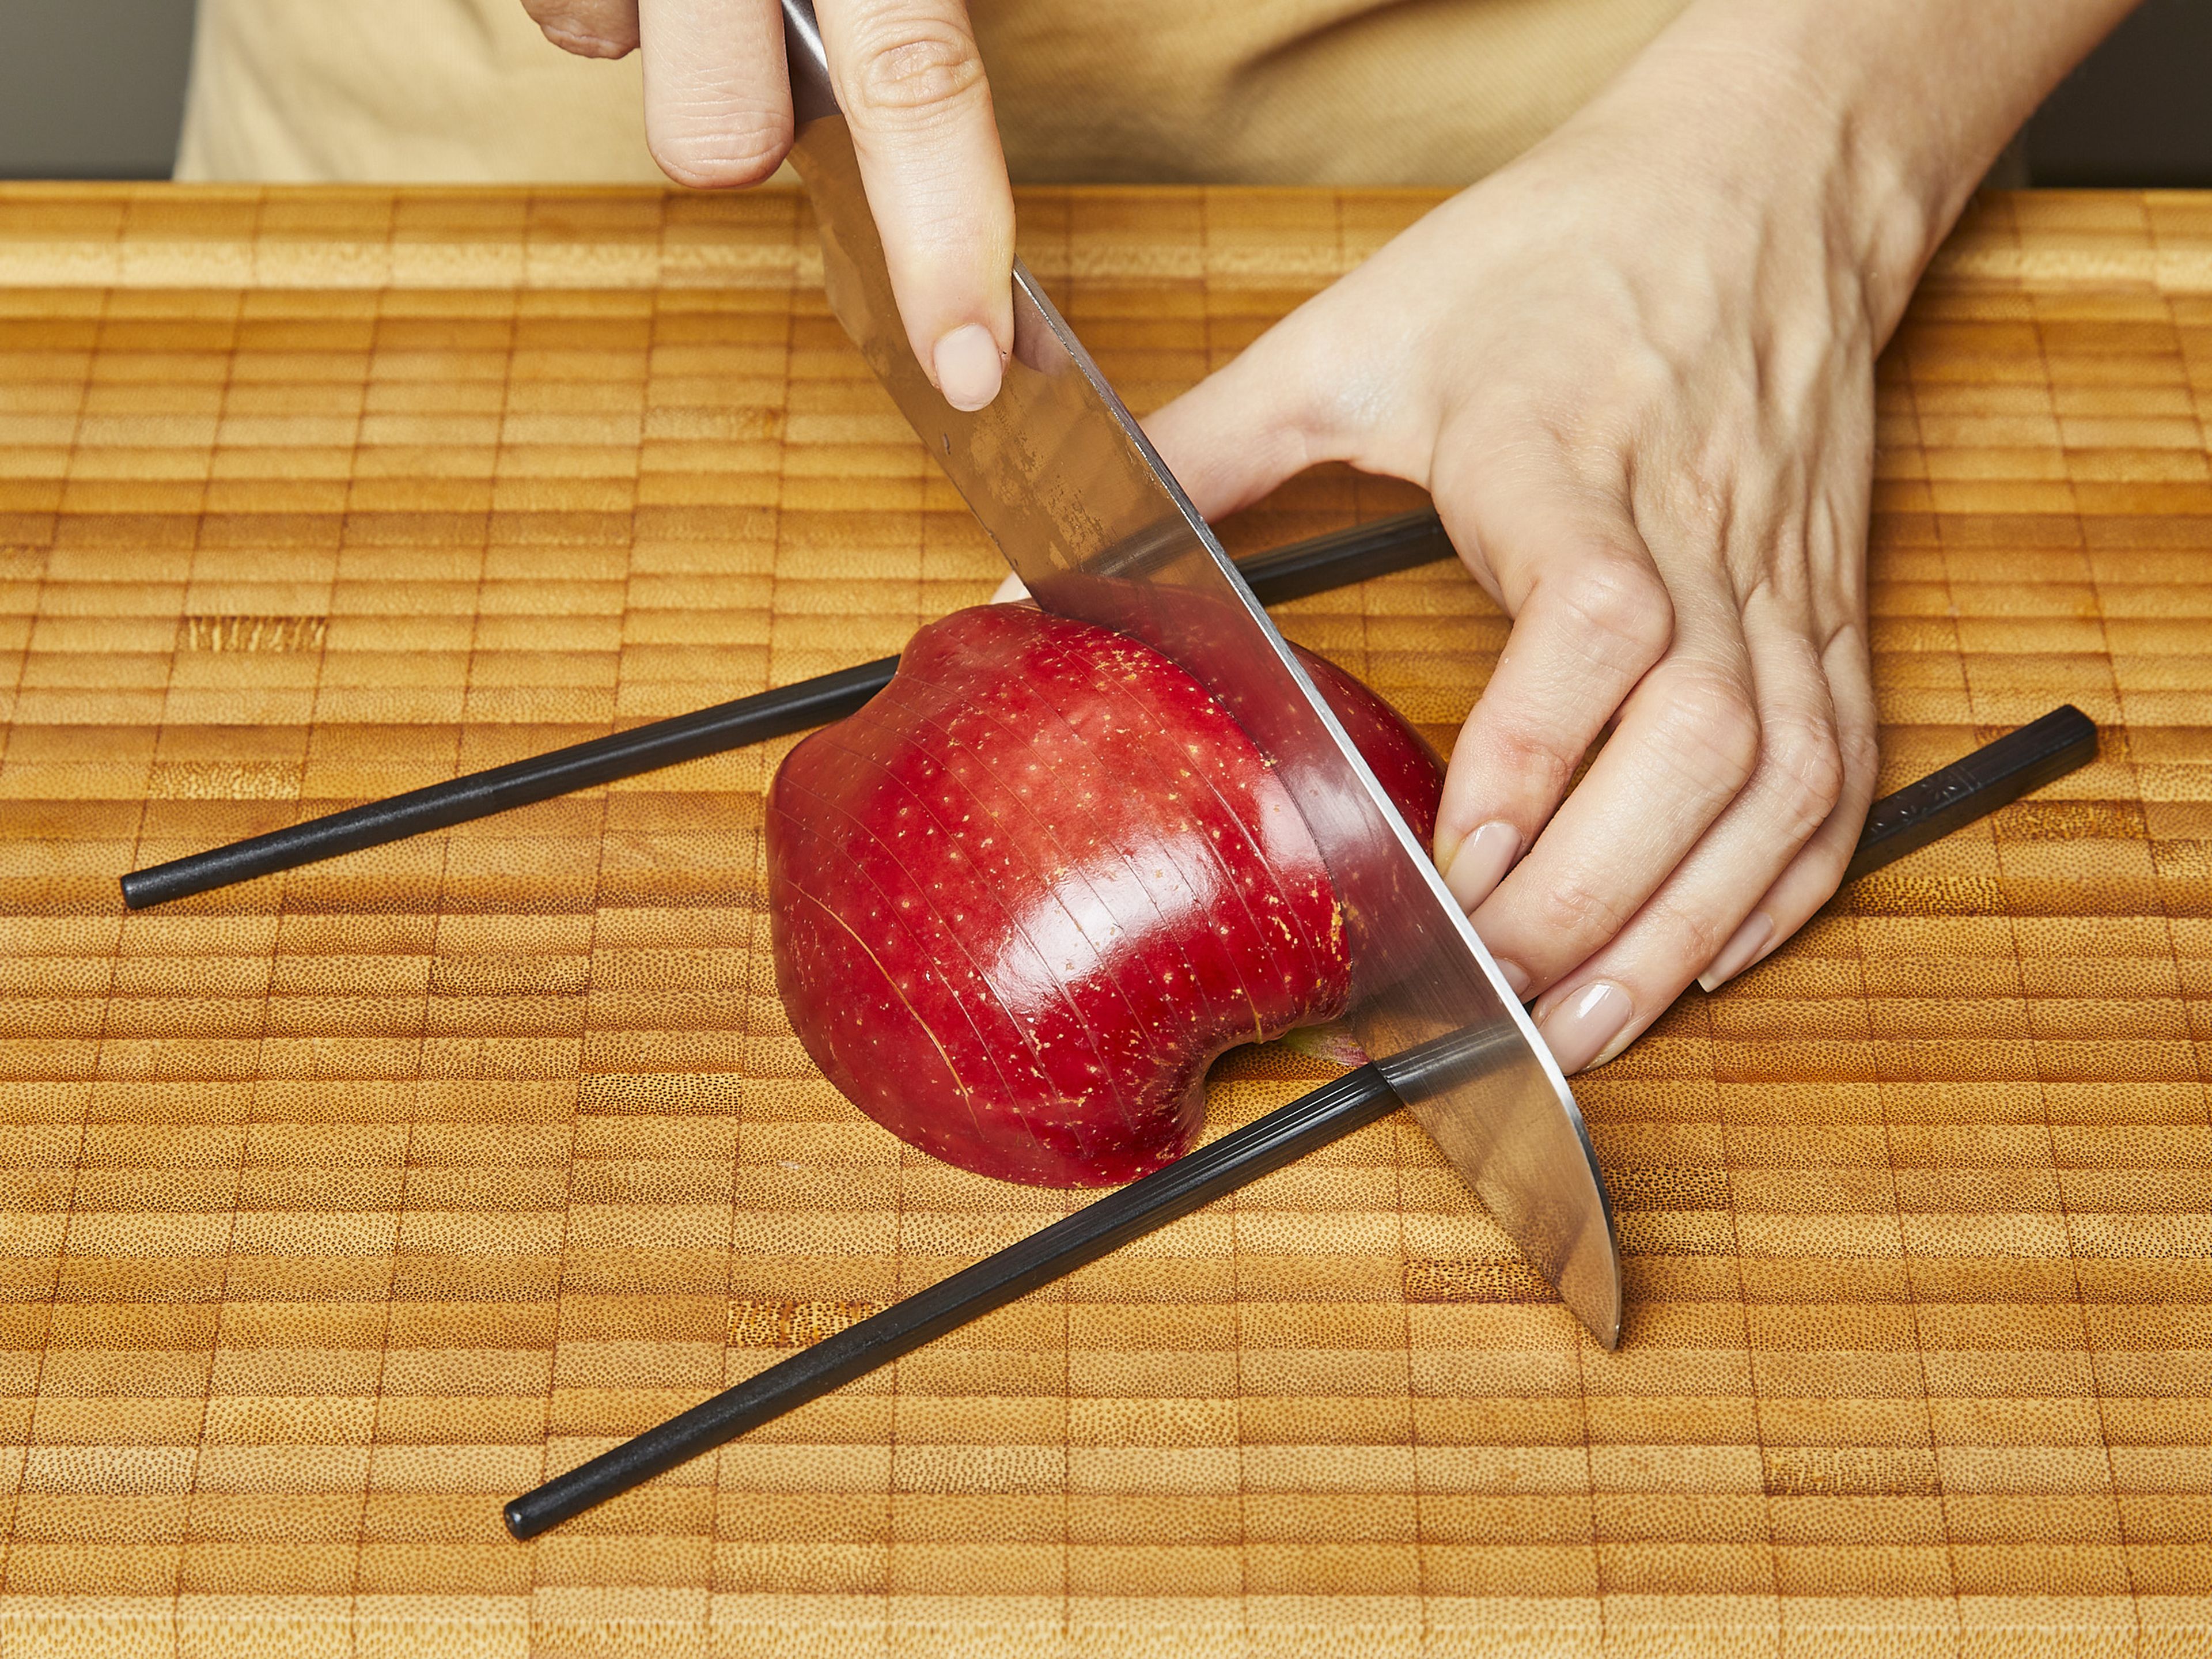 Äpfel halbieren und das Kerngehäuse vorsichtig herauslösen, dabei nicht zu tief einschneiden. Mit der Schnittfläche nach unten setzen und mit einem scharfen Messer jeweils alle ca. 0,3–0,5 cm einschneiden, dabei aber nicht ganz durchschneiden. Tipp: Dafür jeweils oben und unten ein Essstäbchen an den Apfel legen.